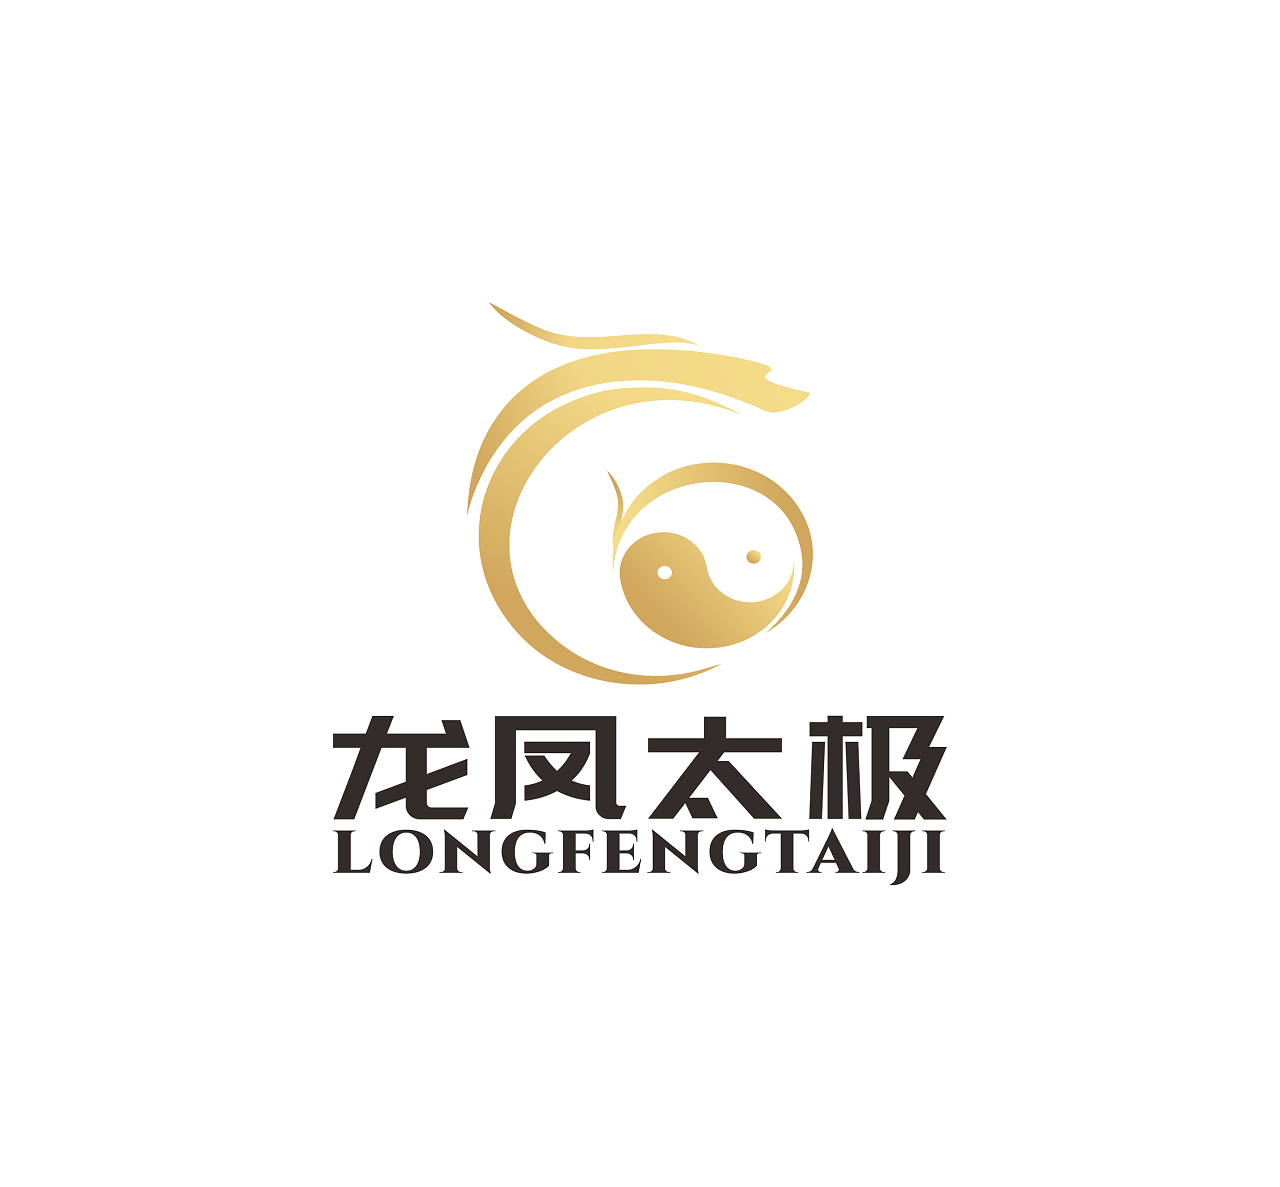 龙凤太极龙戏珠logo标志龙凤和太极组合龙logo